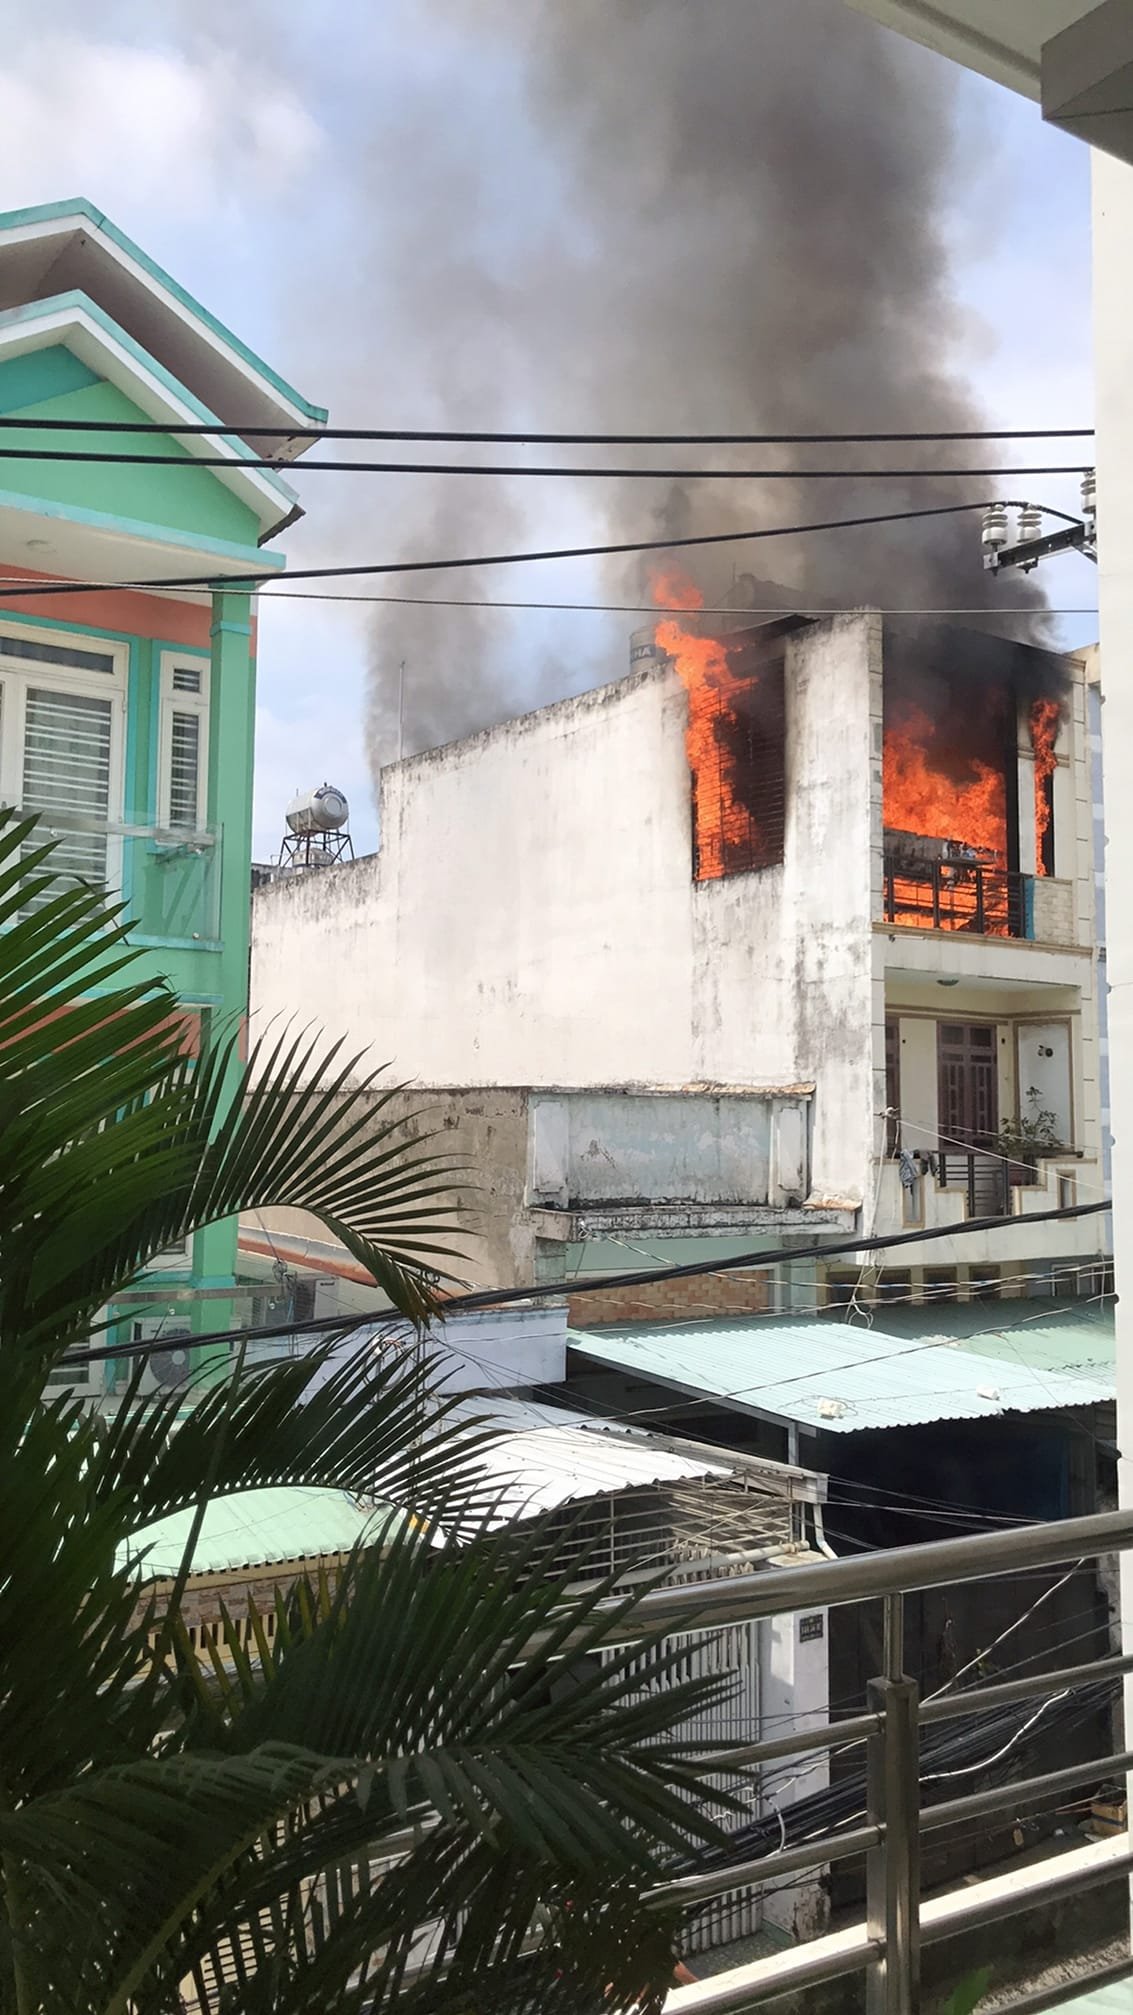 Vụ cháy khiến nhiều tài sản bị thiêu rụi, căn nhà bên cạnh cũng bị ảnh hưởng.